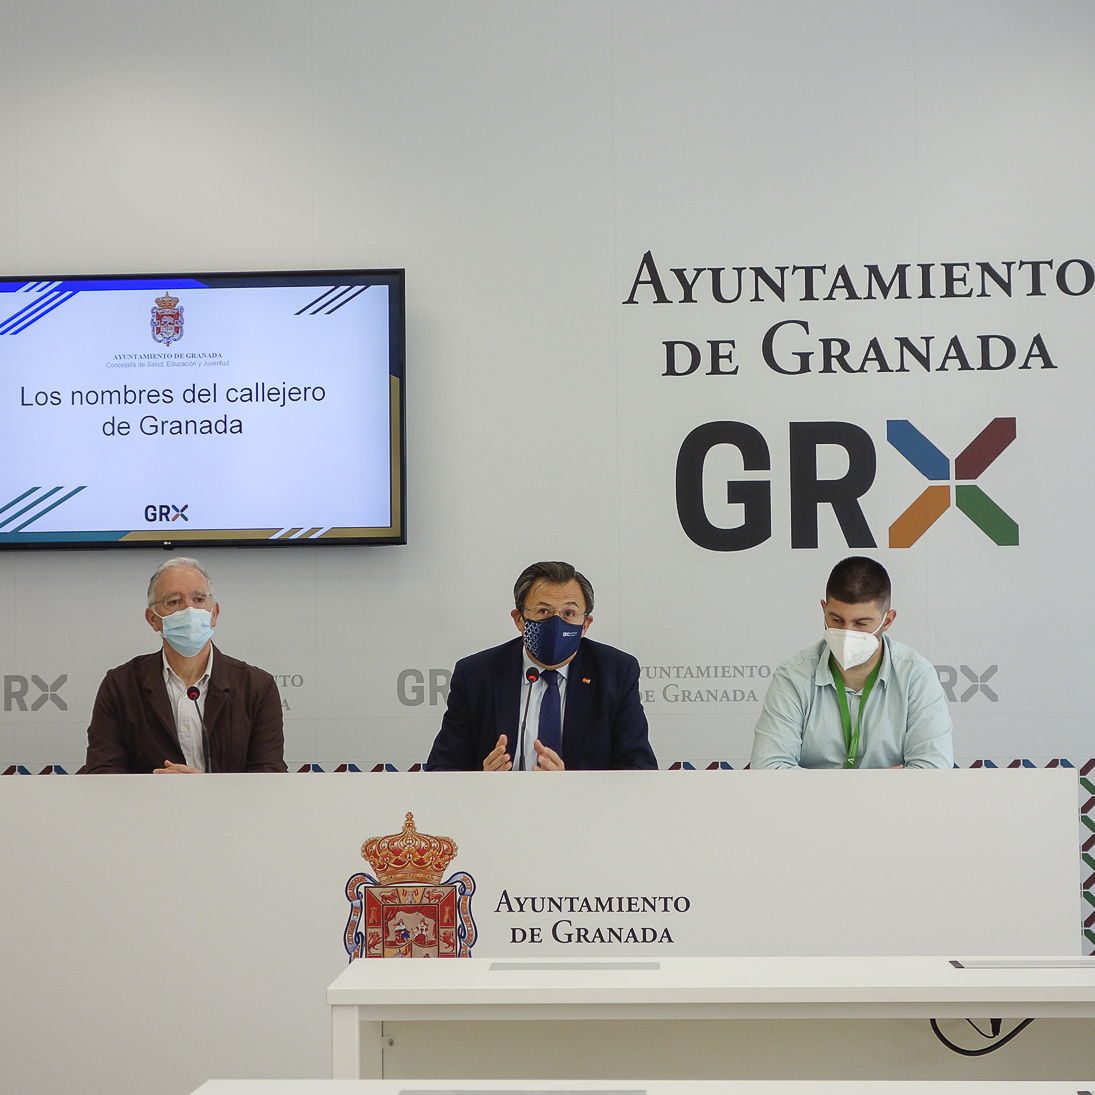 ©Ayto.Granada: EL AYUNTAMIENTO OFRECE UN PROGRAMA EDUCATIVO ON -LINE PARA ENSEAR A TRAVS DEL CALLEJERO DE LA CIUDAD LA HISTORIA DE GRANADA 